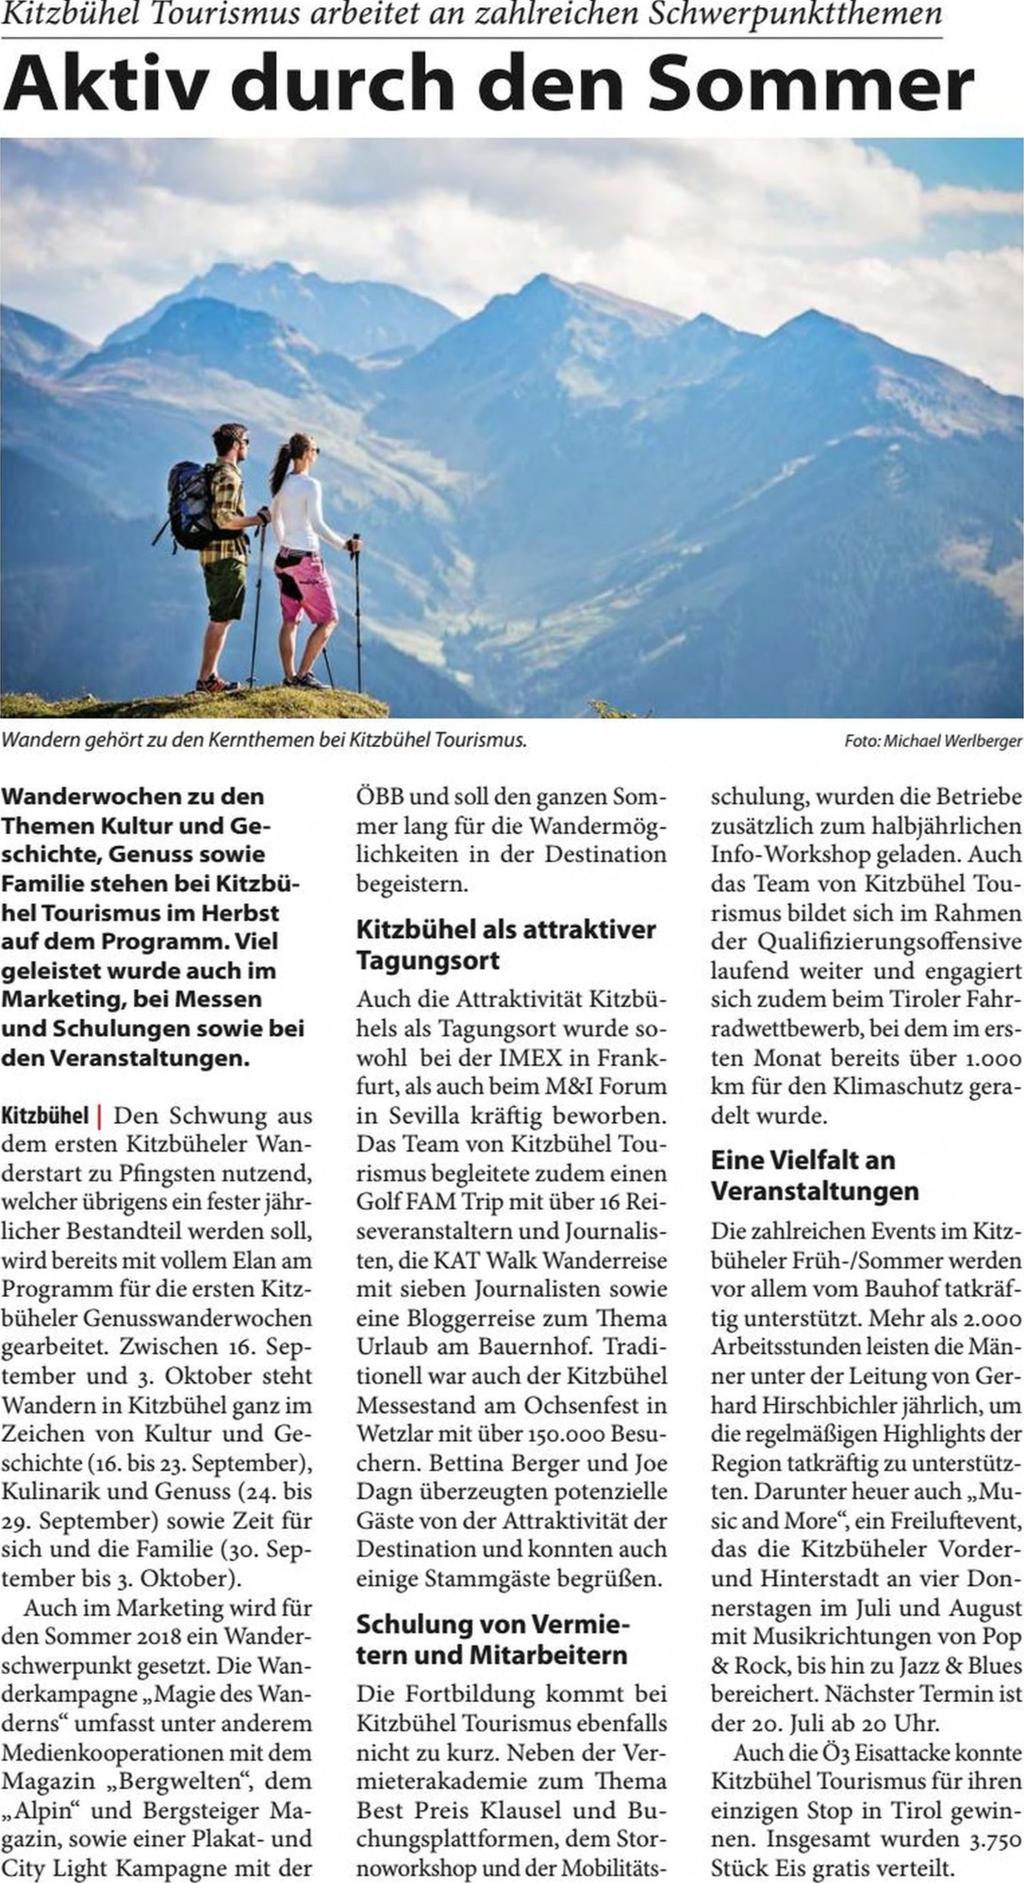 Kitzbüheler Anzeiger Seite 39 / 20.07.